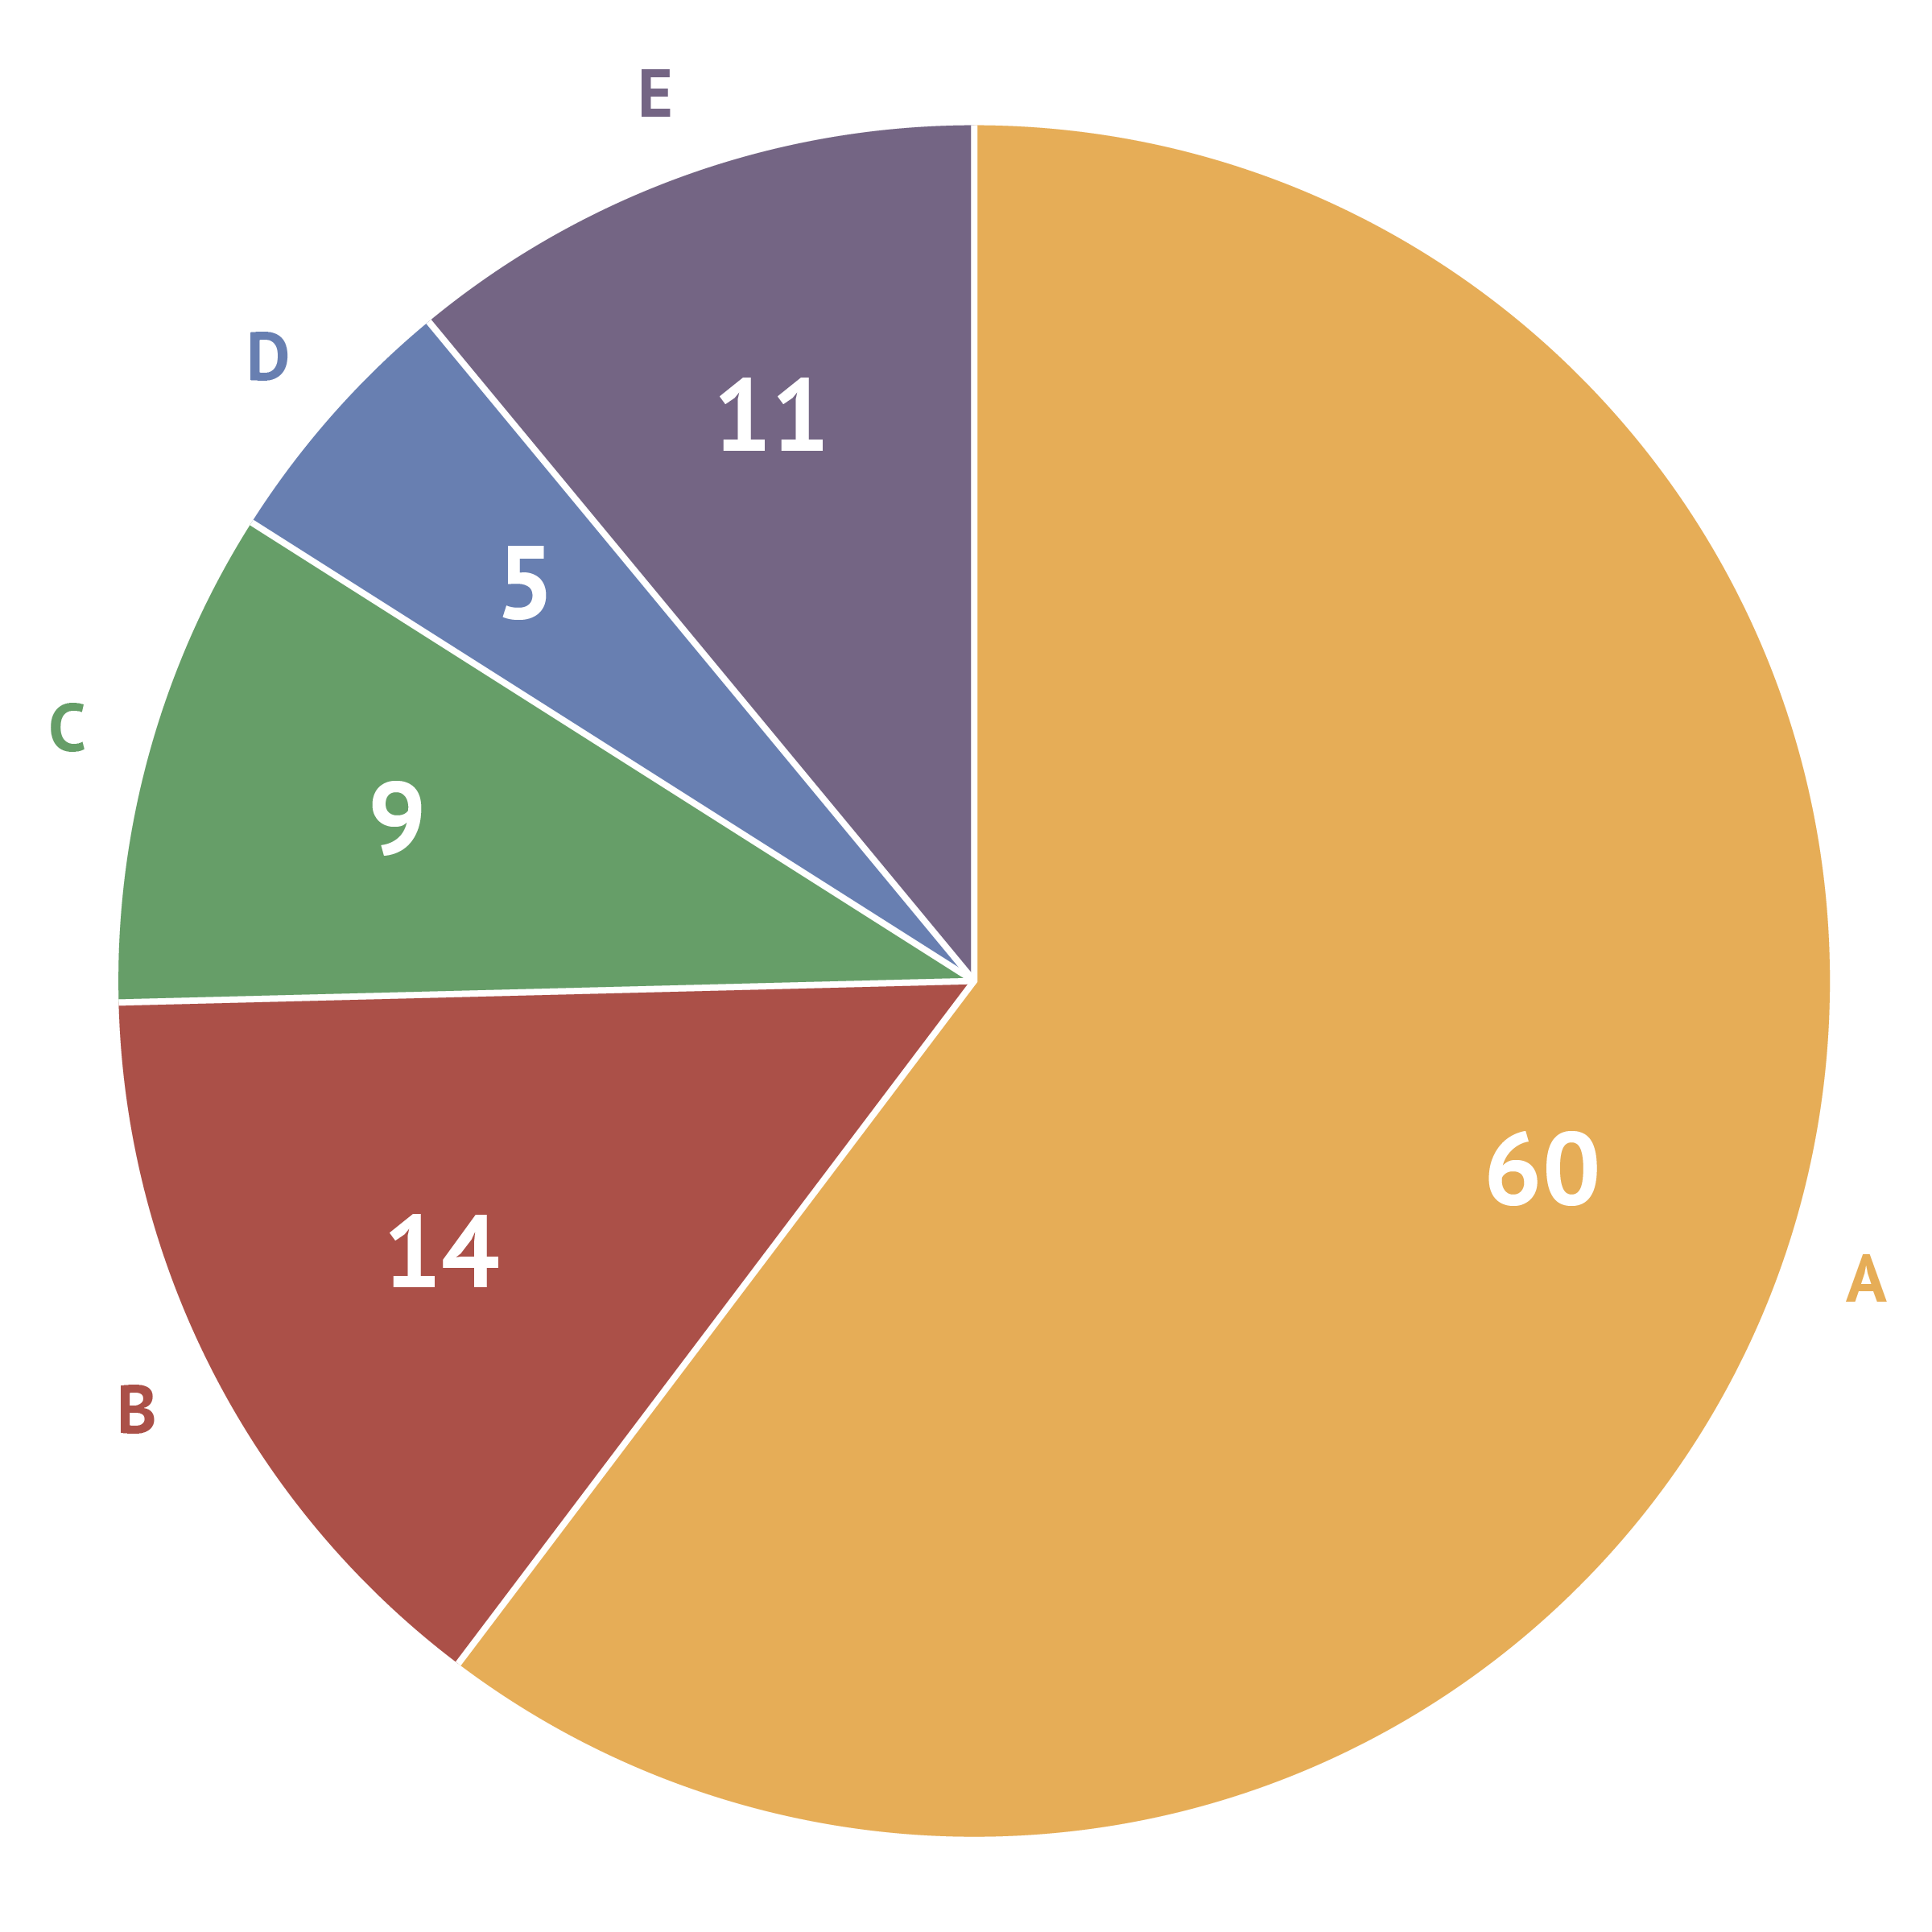 A pie chart totalling 99%. Source: Maarten Lambrechts, CC BY 4.